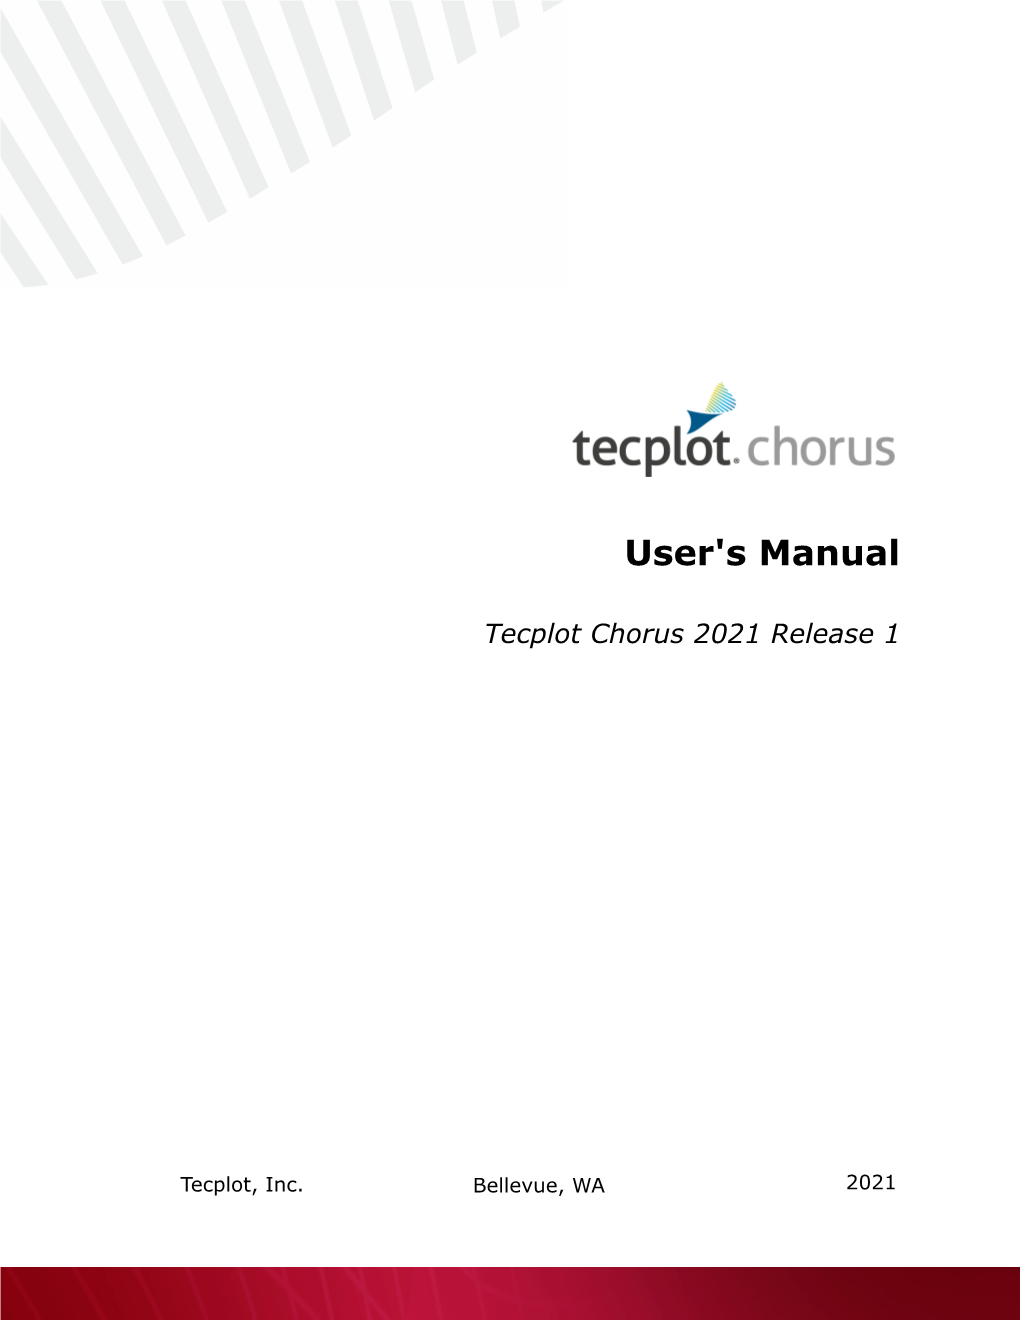 Tecplot Chorus User's Manual